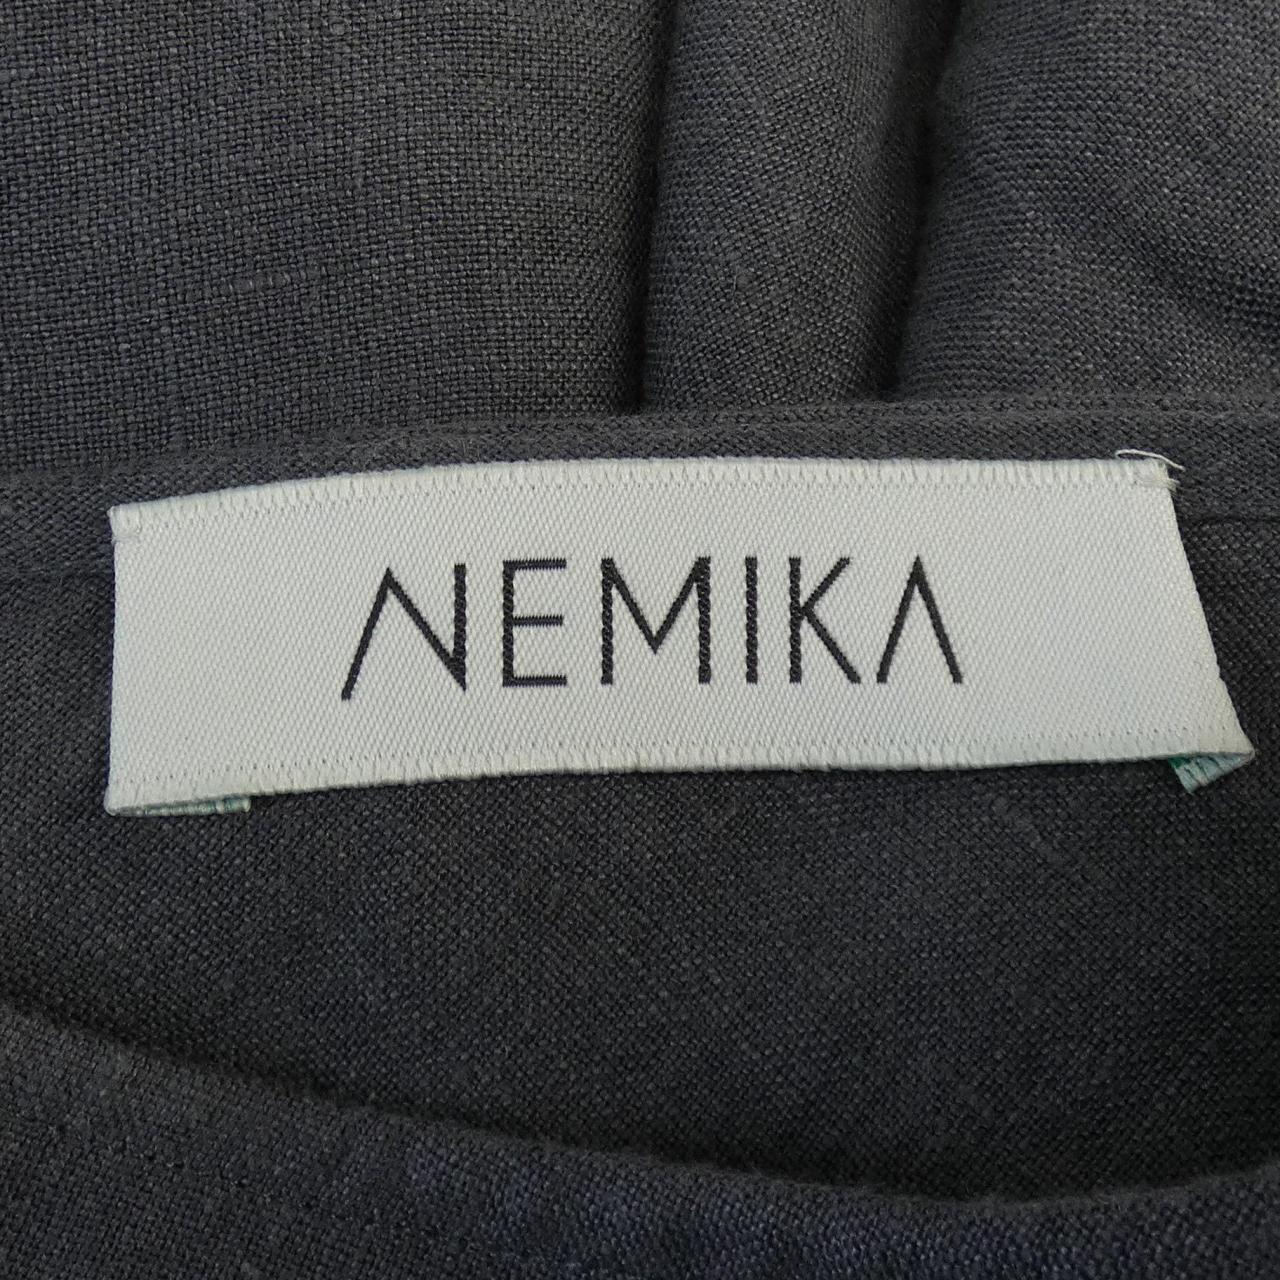 ネミカ NEMIKA ワンピース